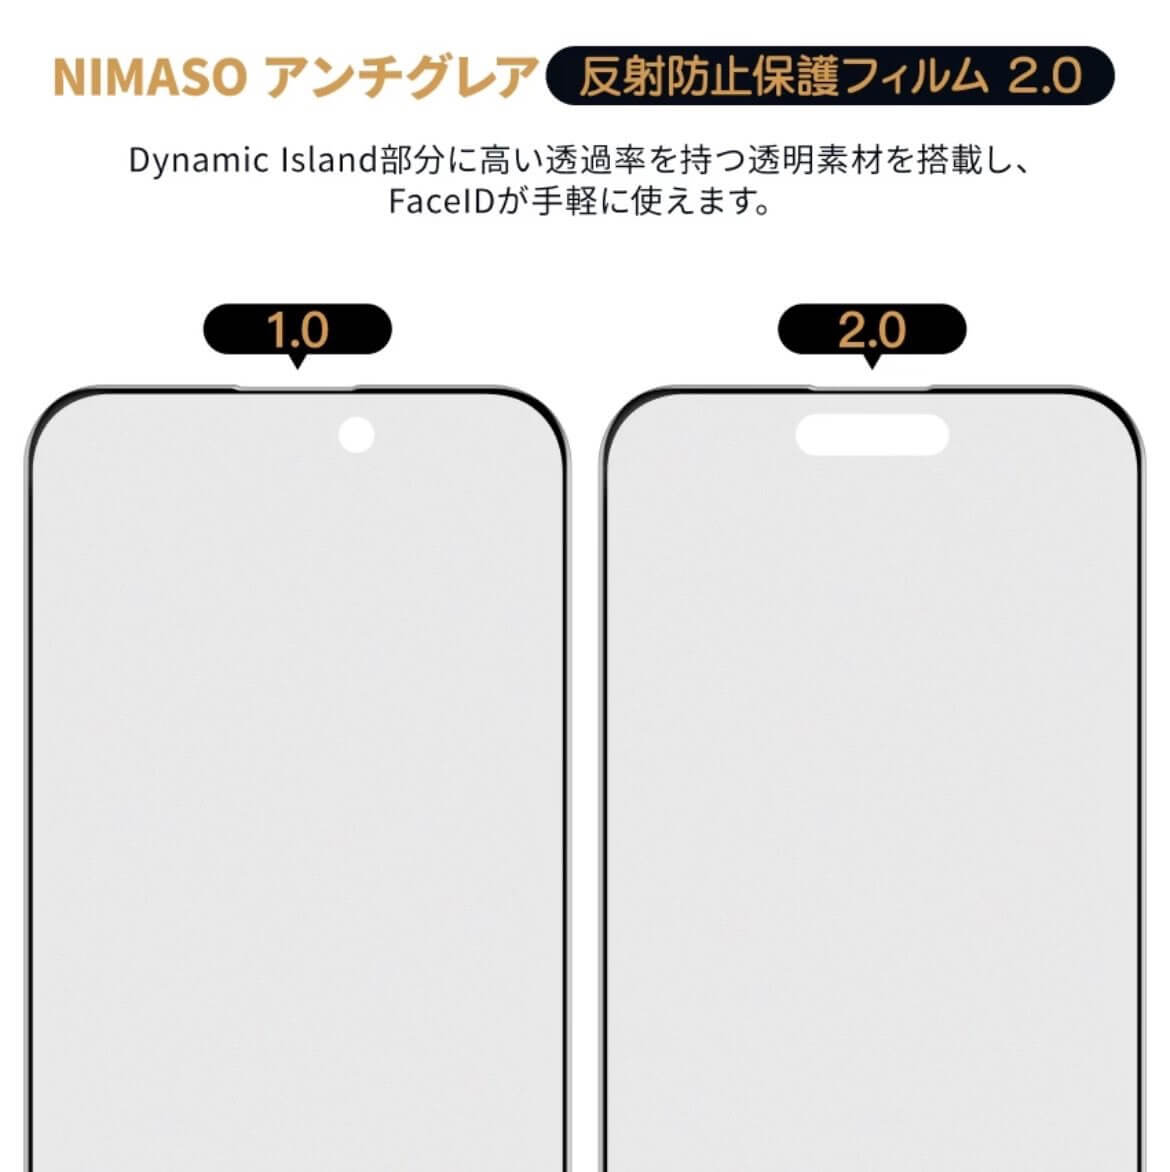 NIMASO、｢iPhone 15｣シリーズ向けの新型ガラスフィルムを発売 ｰ ダイナミックアイランド部分に高い透過率の素材採用でFace IDの認識性能向上